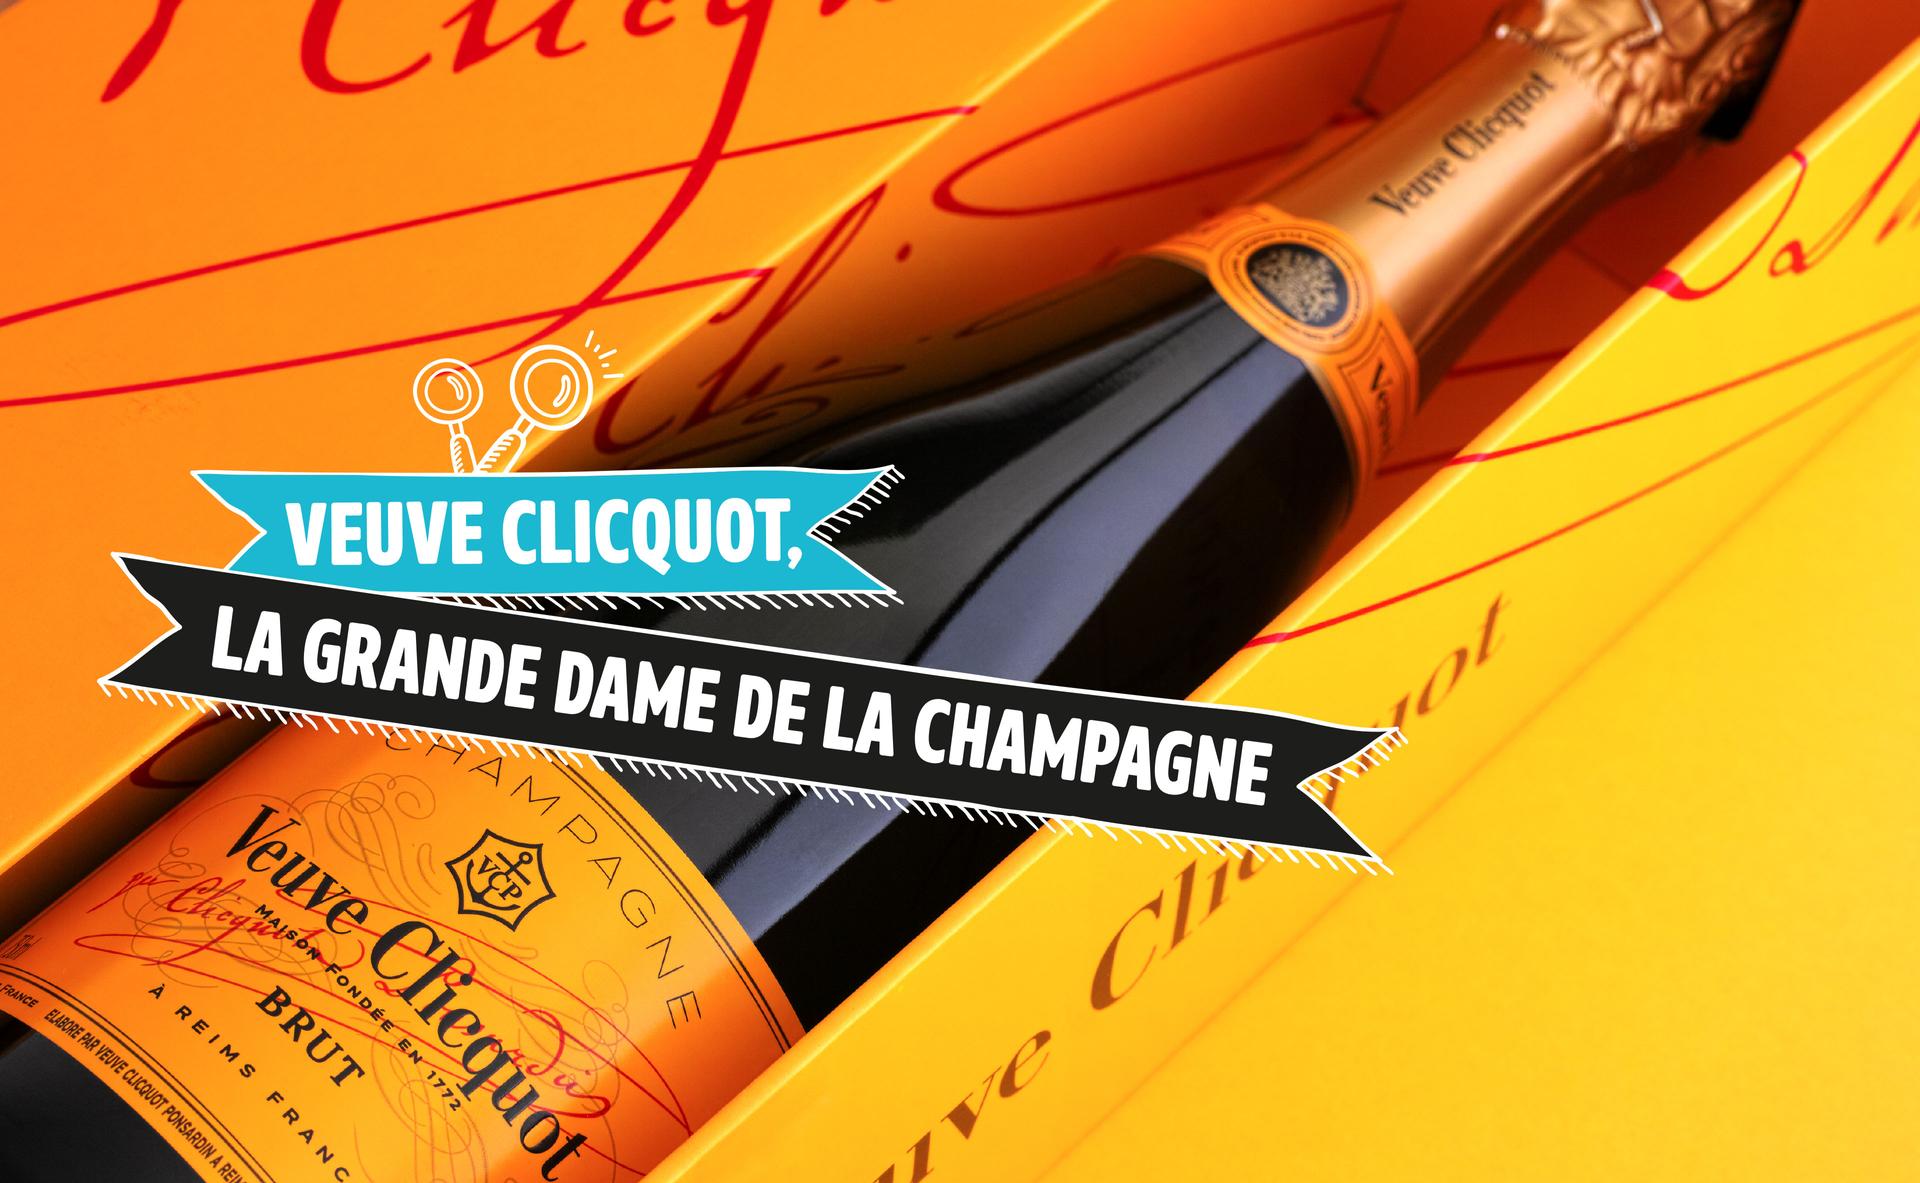 Veuve Clicquot, la grande dame de la Champagne